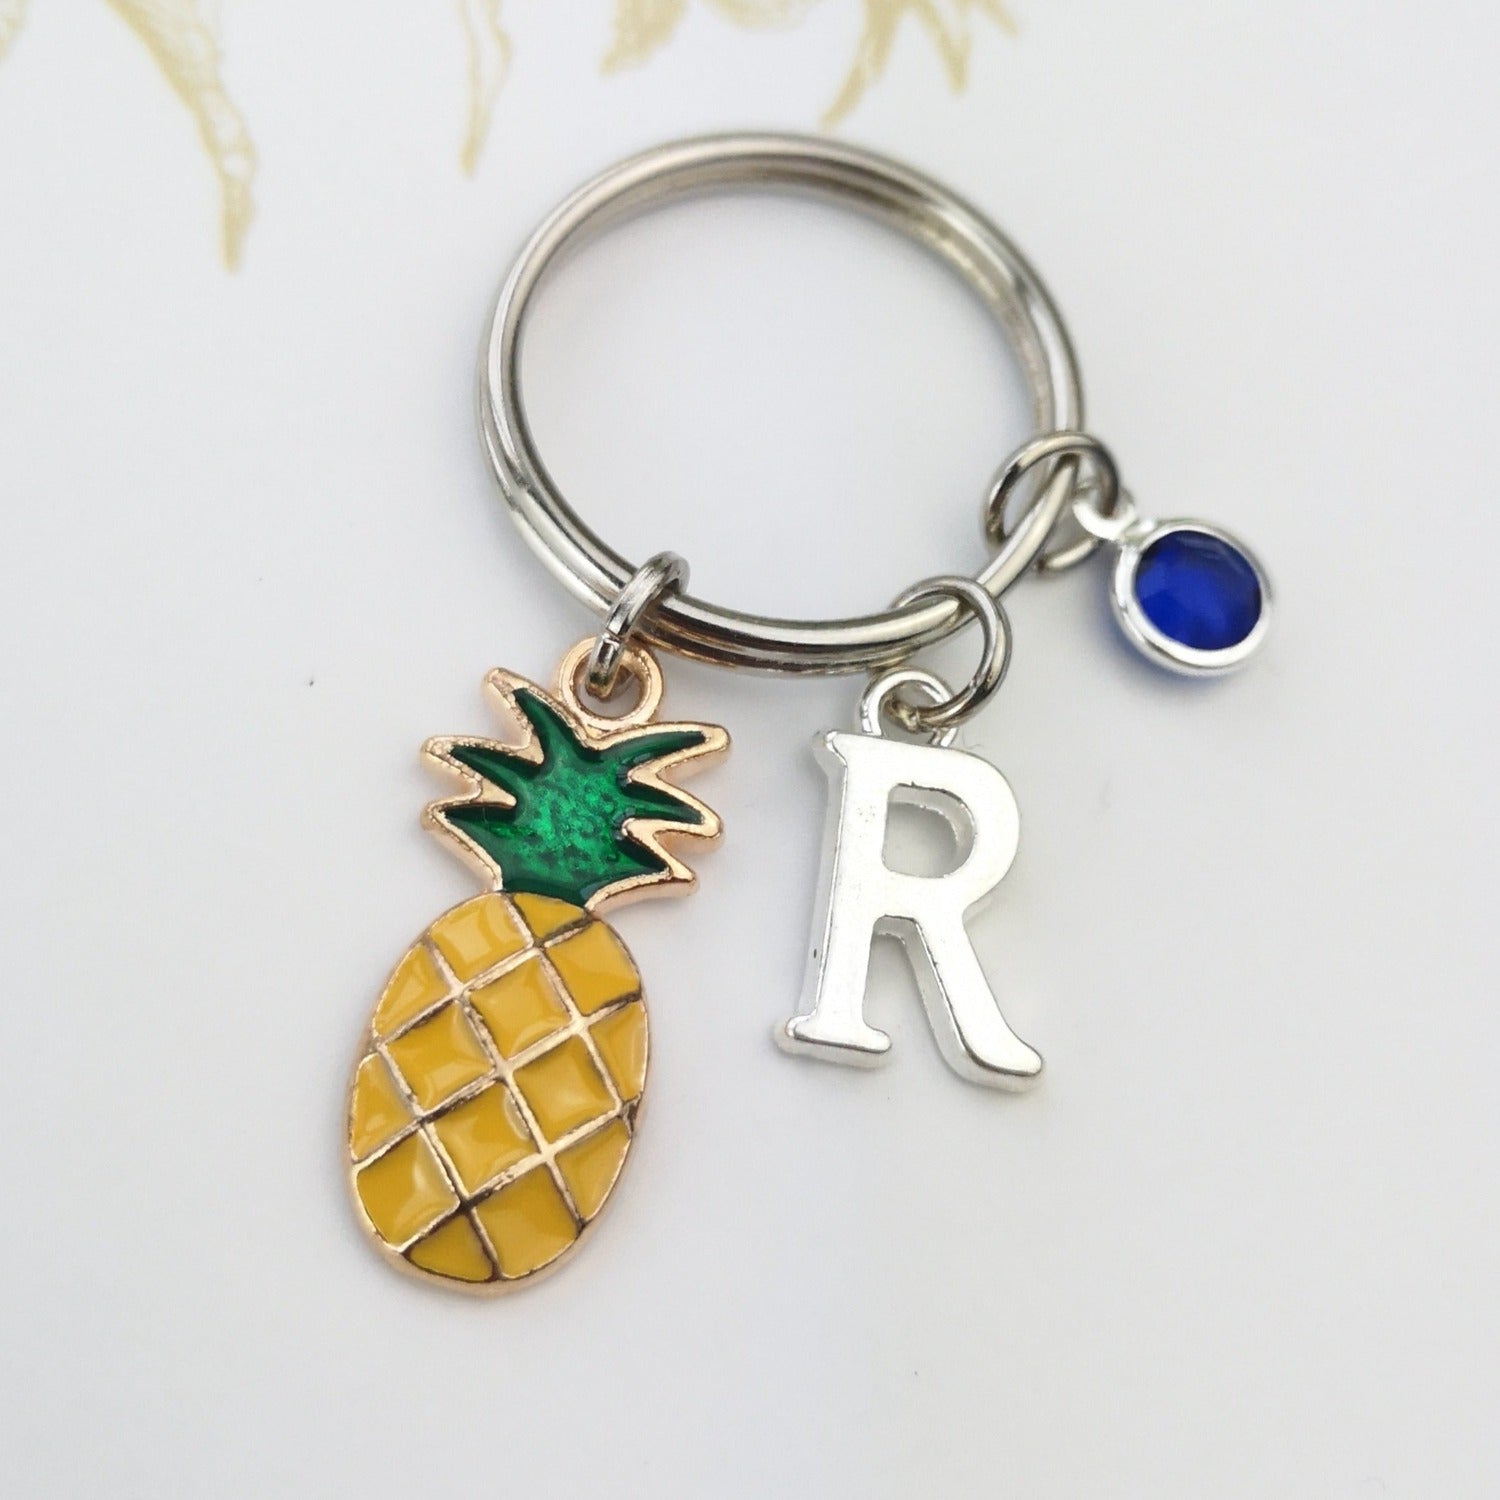 Personalised pineapple key ring